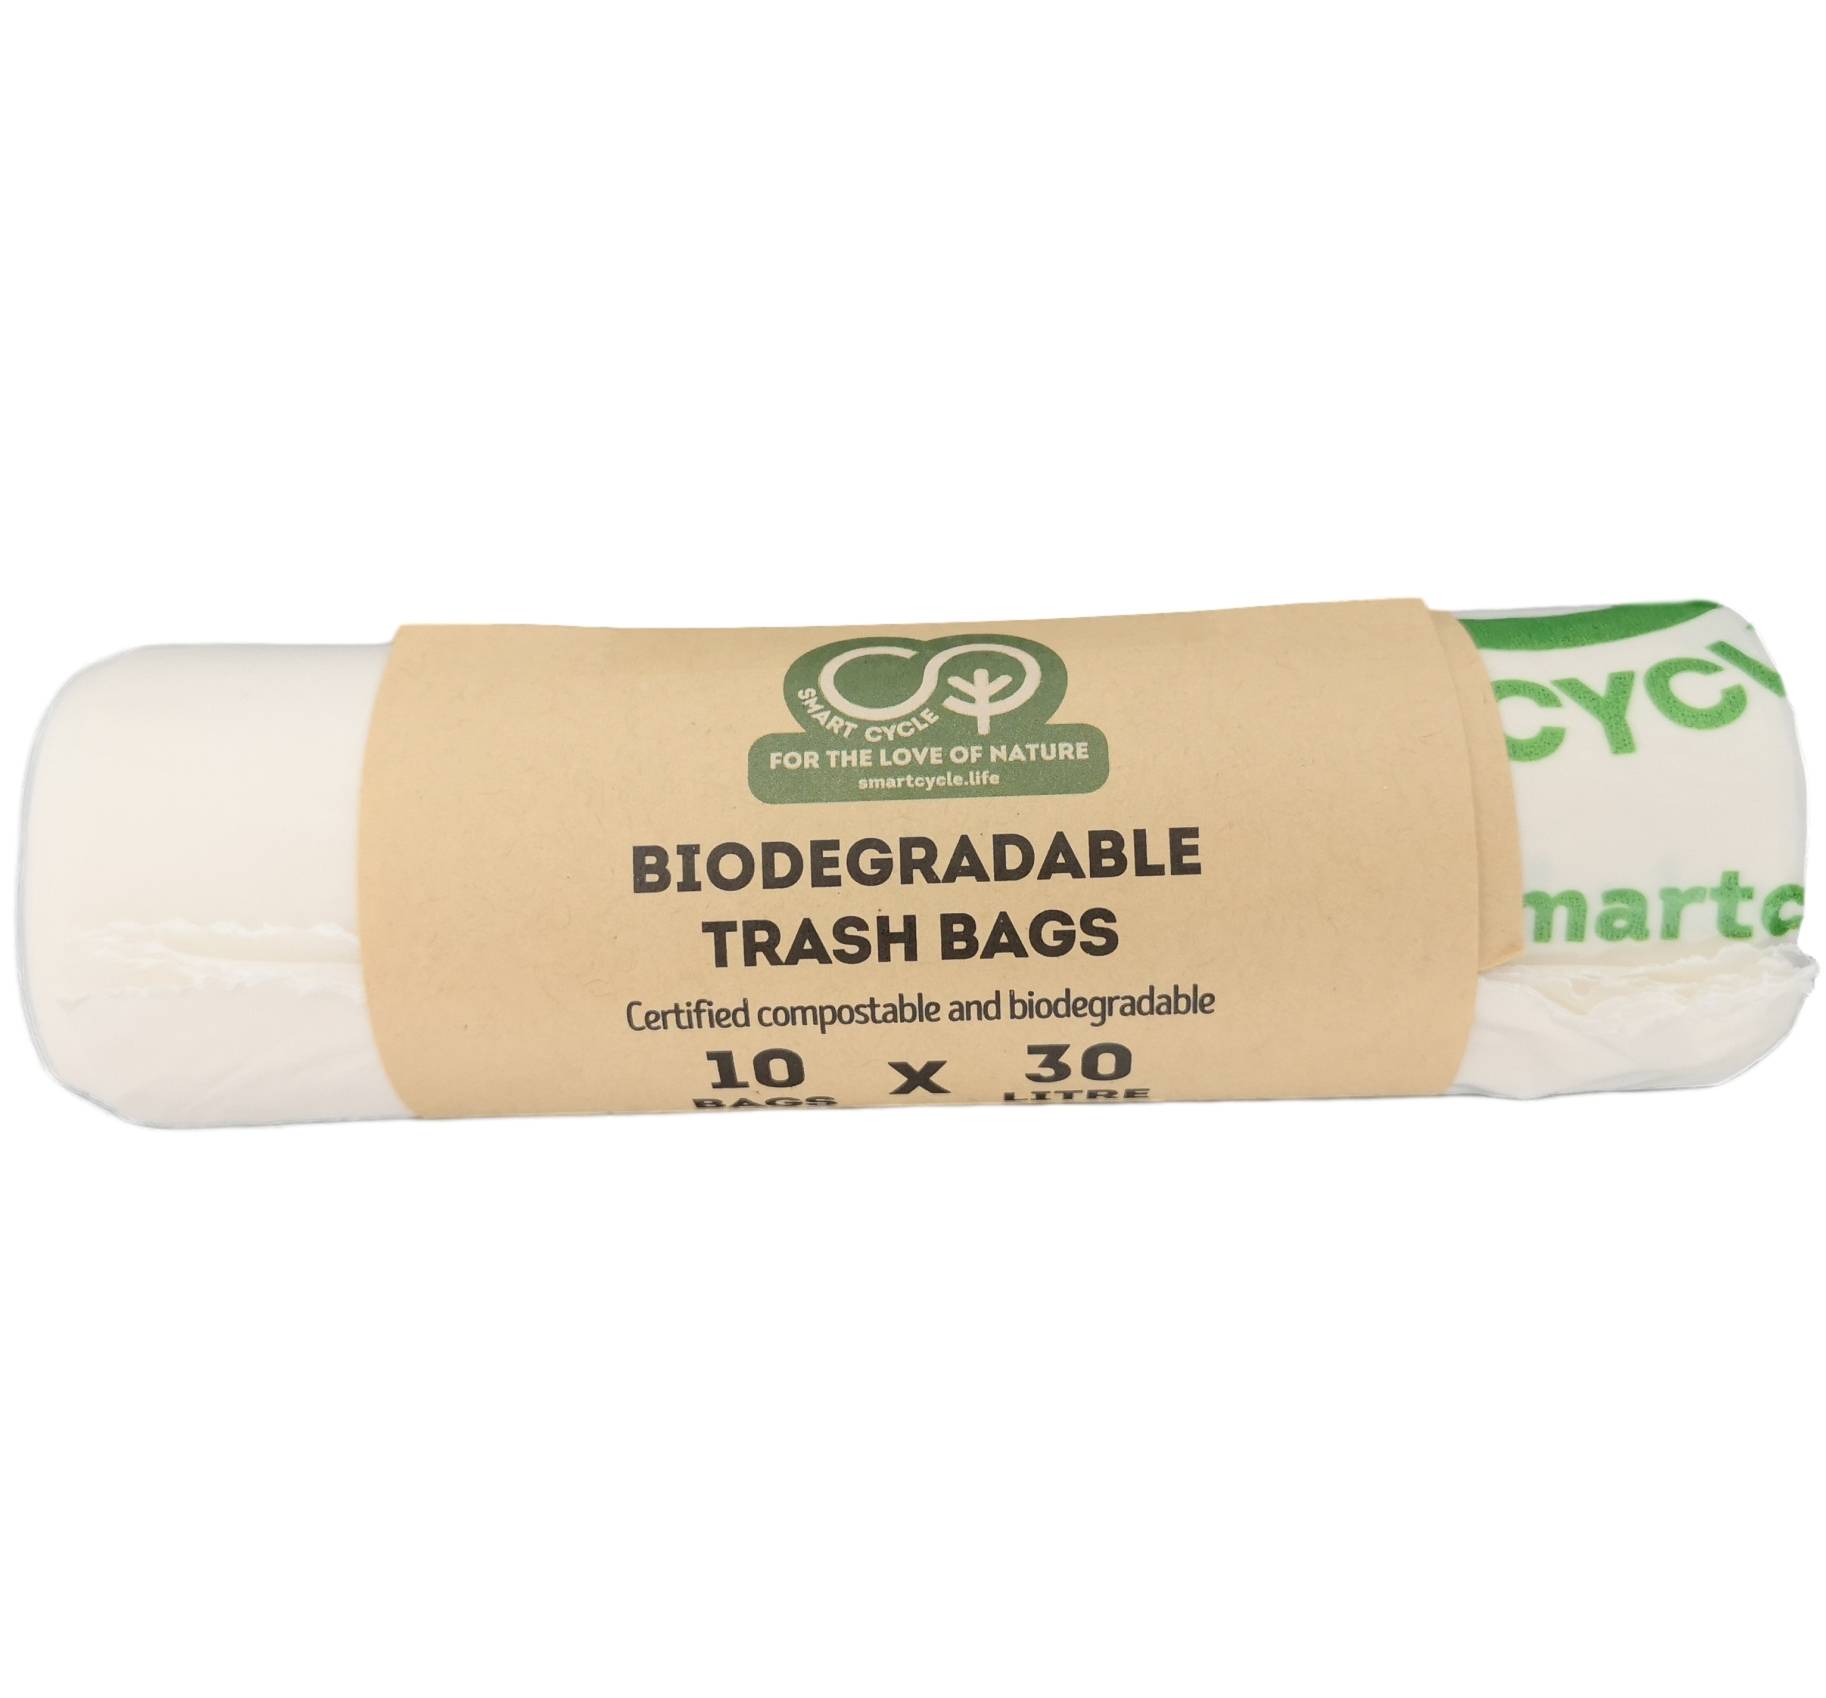 Saci menajeri biodegradabili 30 litri x 10 buc smart cycle